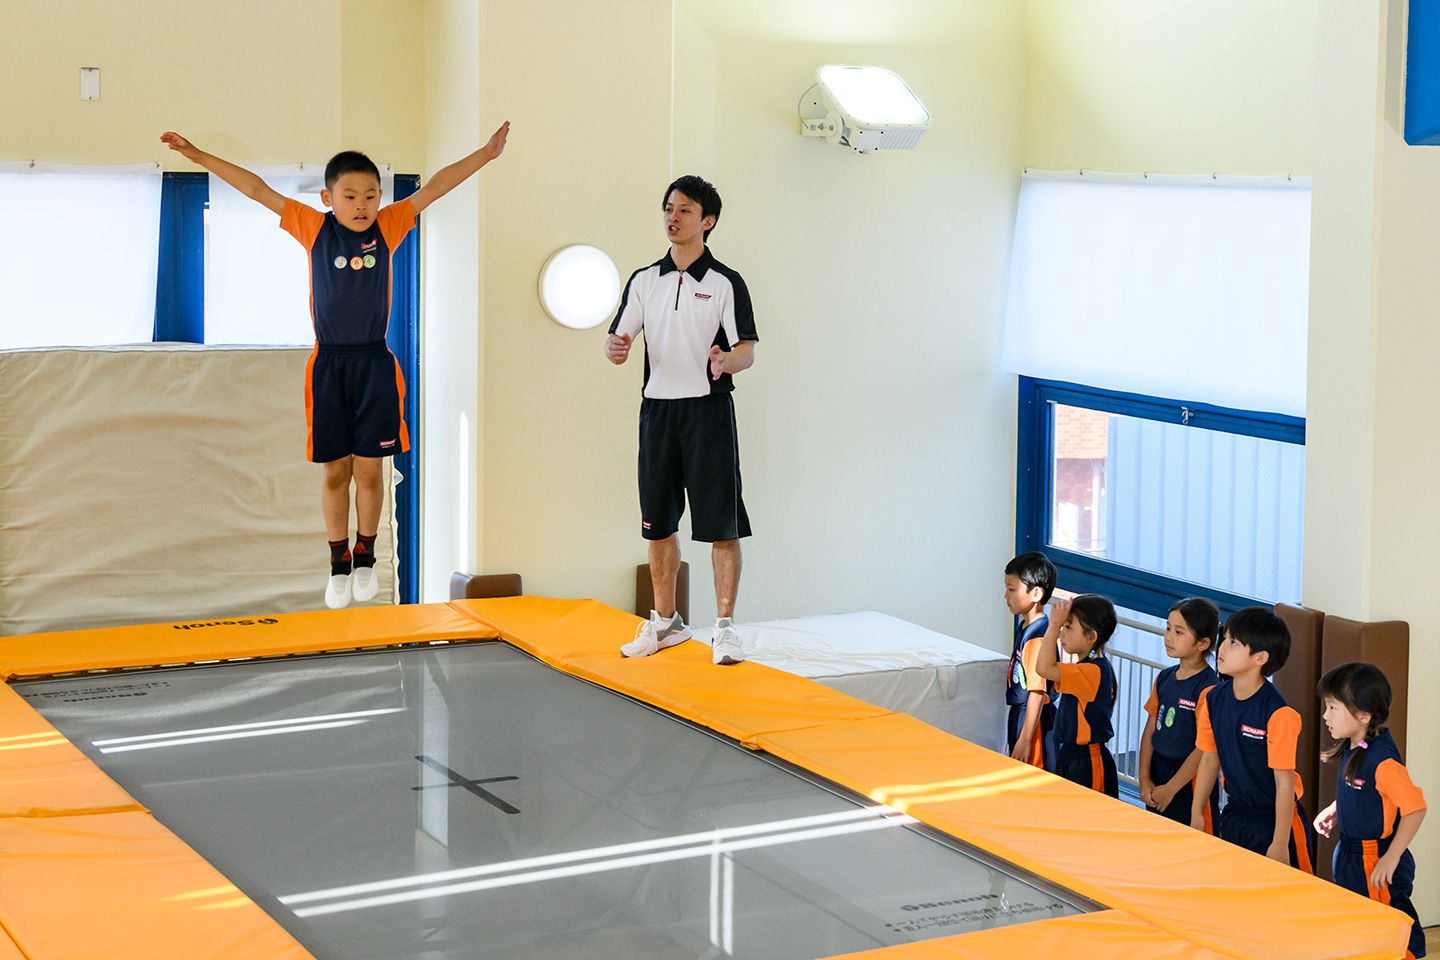 コナミスポーツクラブ トランポリンスクールの特徴 トランポリン スクールは ほめる型指導 や 段階別指導 を組み合わせることで お子さまが効果的かつ安全にトランポリンの技を習得できるとともに 様々なスポーツに役立つ空中感覚を培うことが